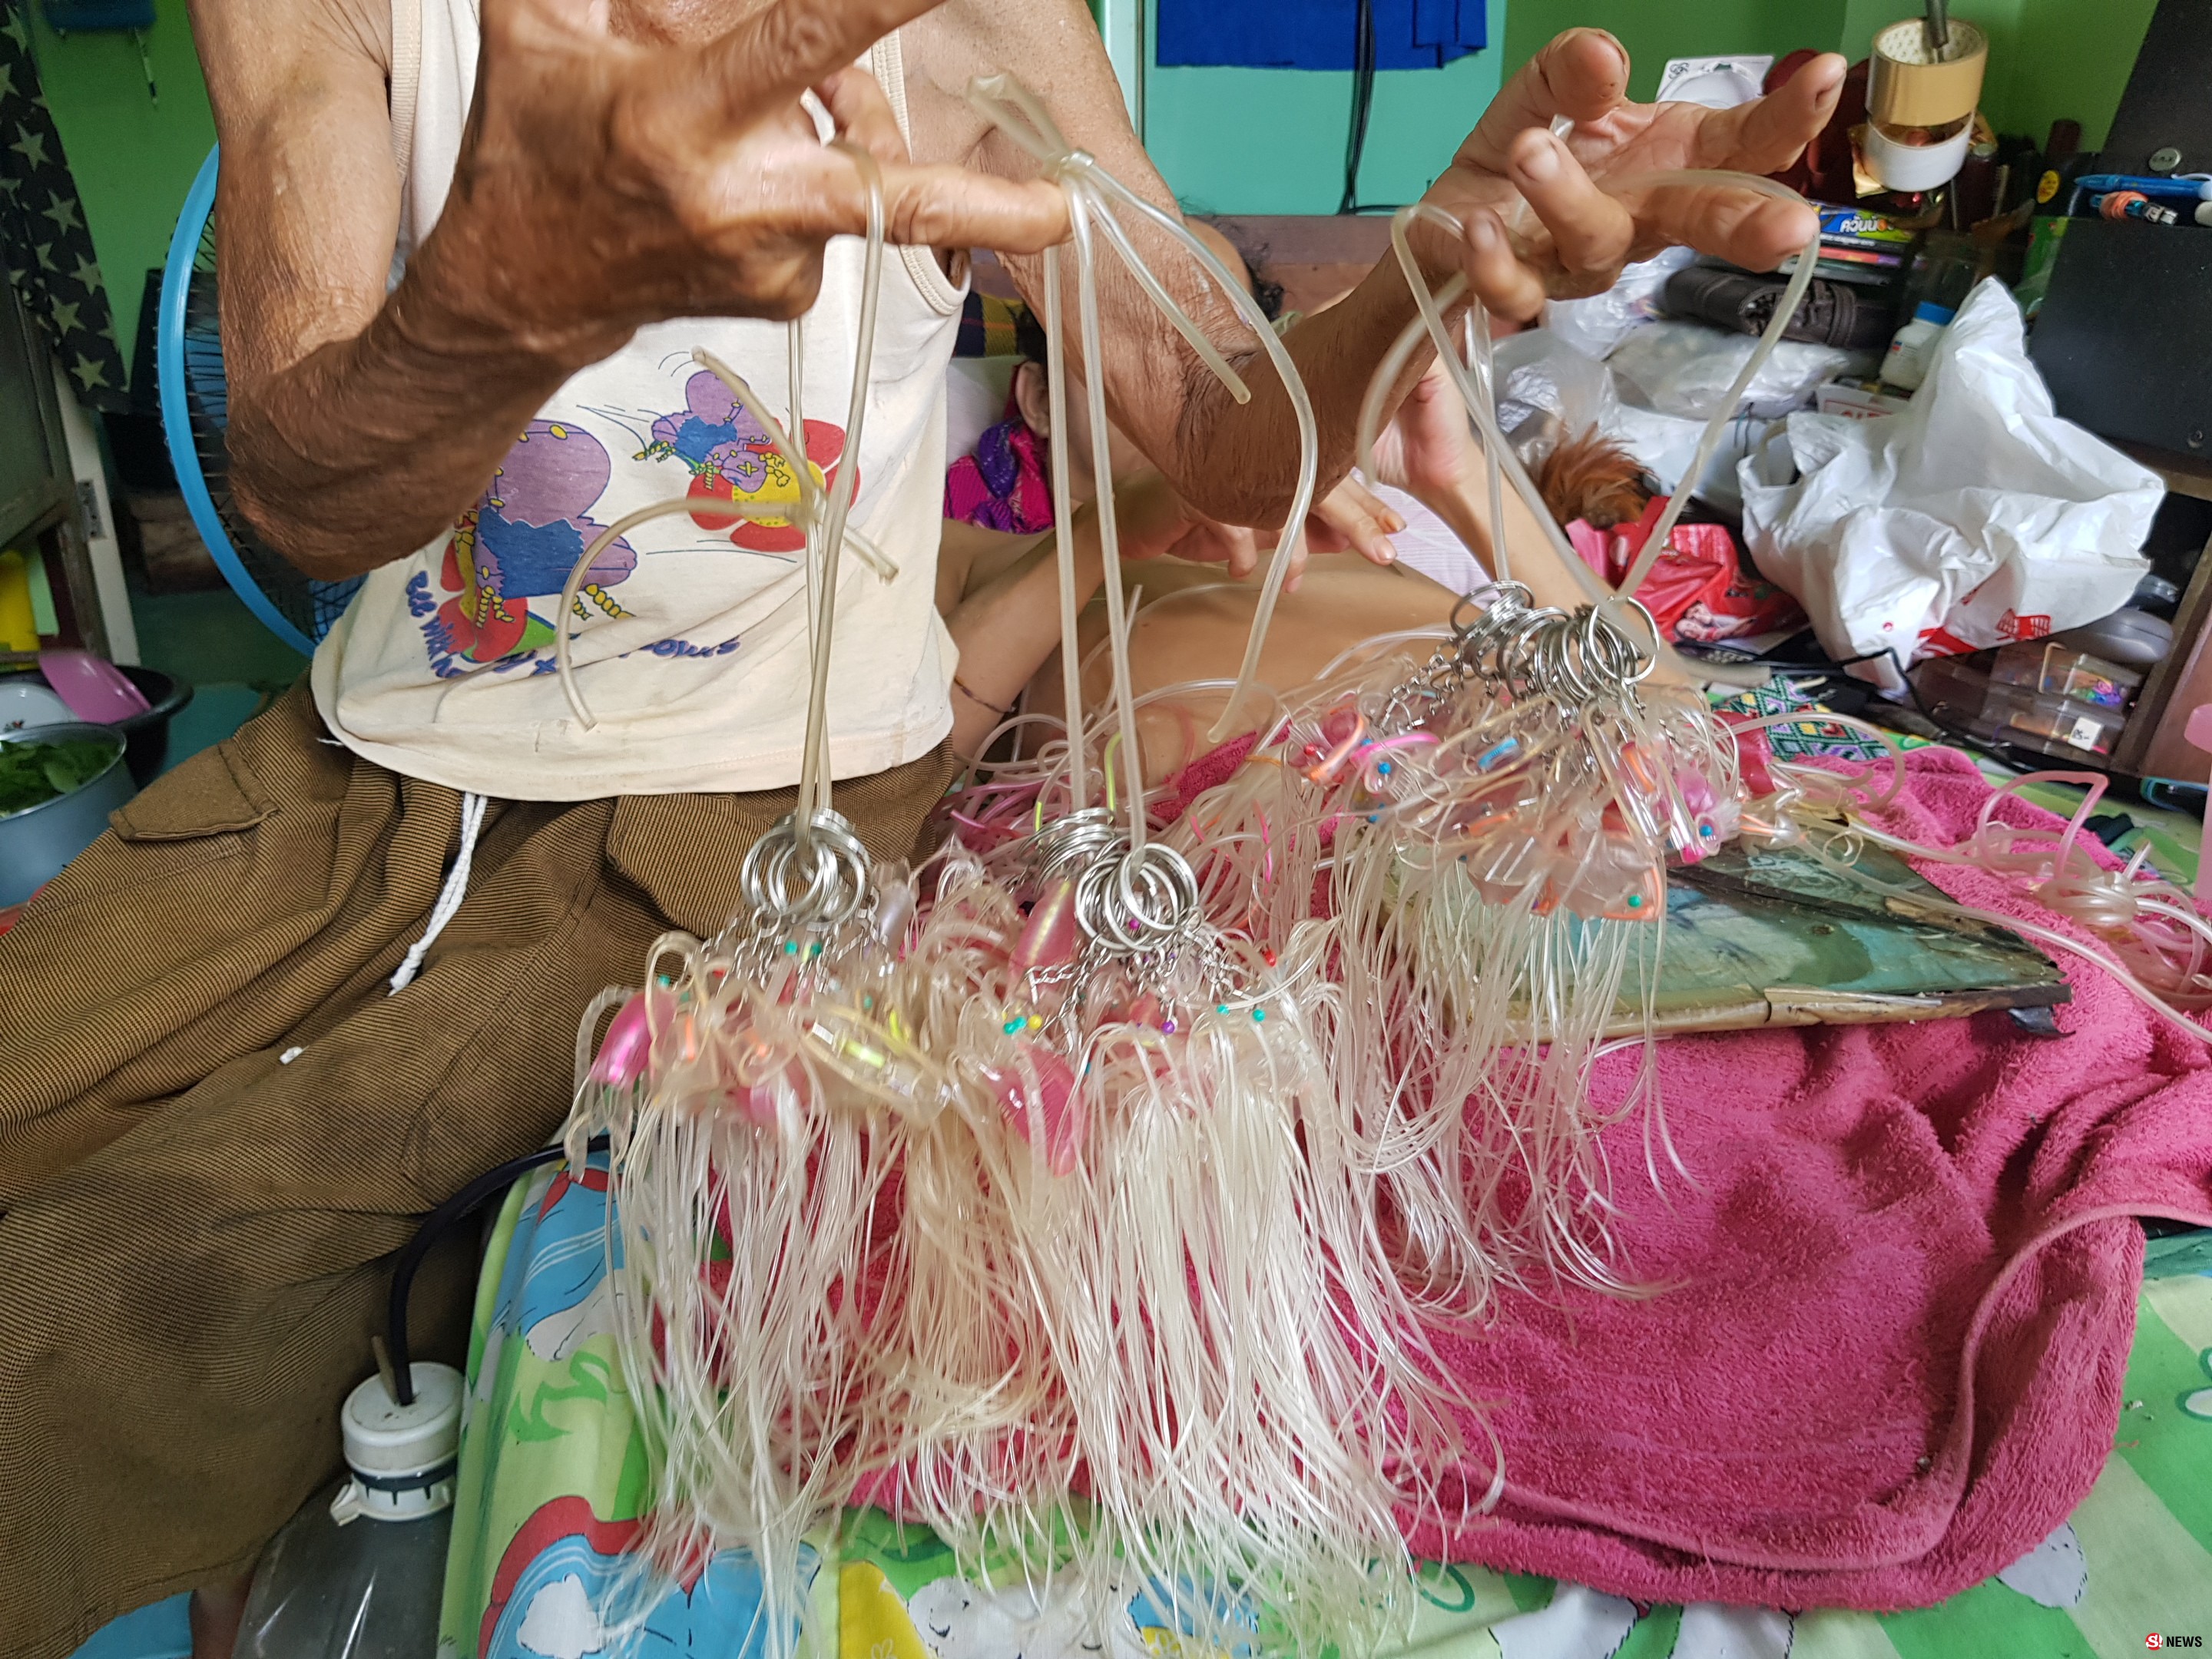 รักของแม่ แม่วัย 78 ปี ช่วยลูกพิการ 54 ปี นอนถักสายน้ำเกลือขายไม่ได้แล้ว